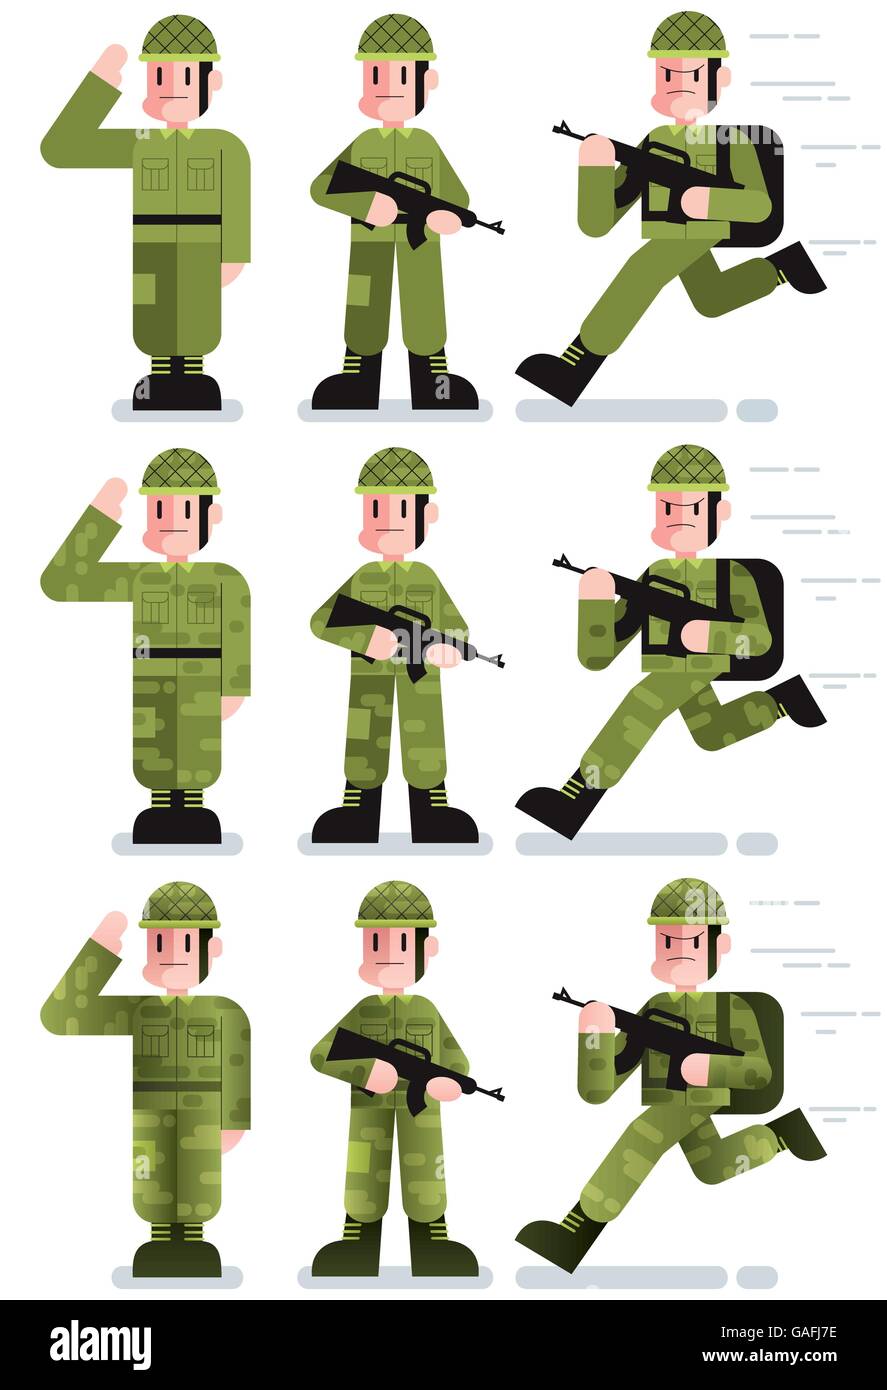 Flache Design-Darstellung des Soldaten in 3 Stellungen und 3 Farbvarianten. Stock Vektor